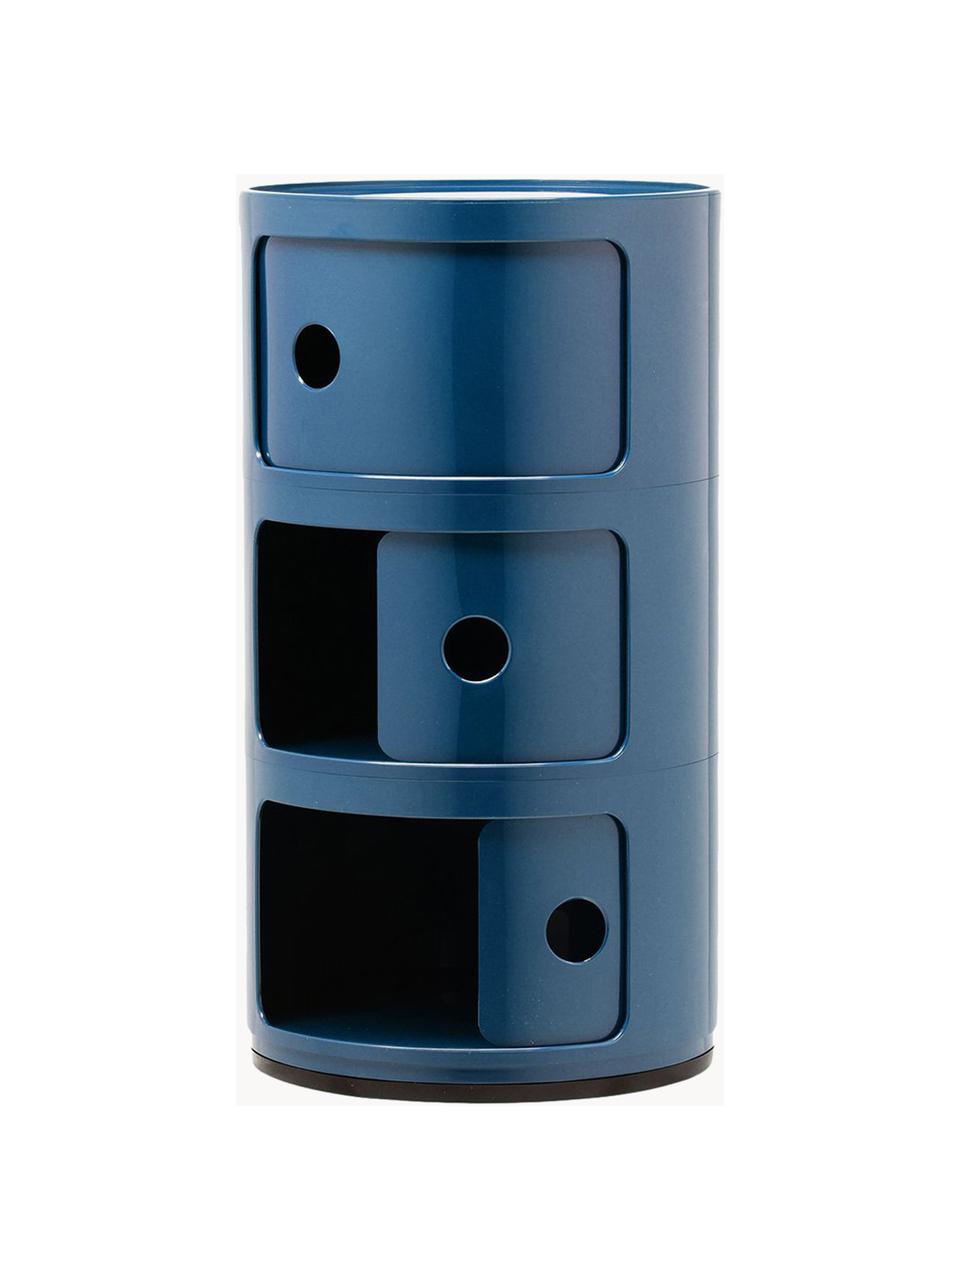 Design Container Componibili, 3 Elemente, Kunststoff (ABS), lackiert, Greenguard-zertifiziert, Graublau, glänzend, Ø 32 x H 59 cm